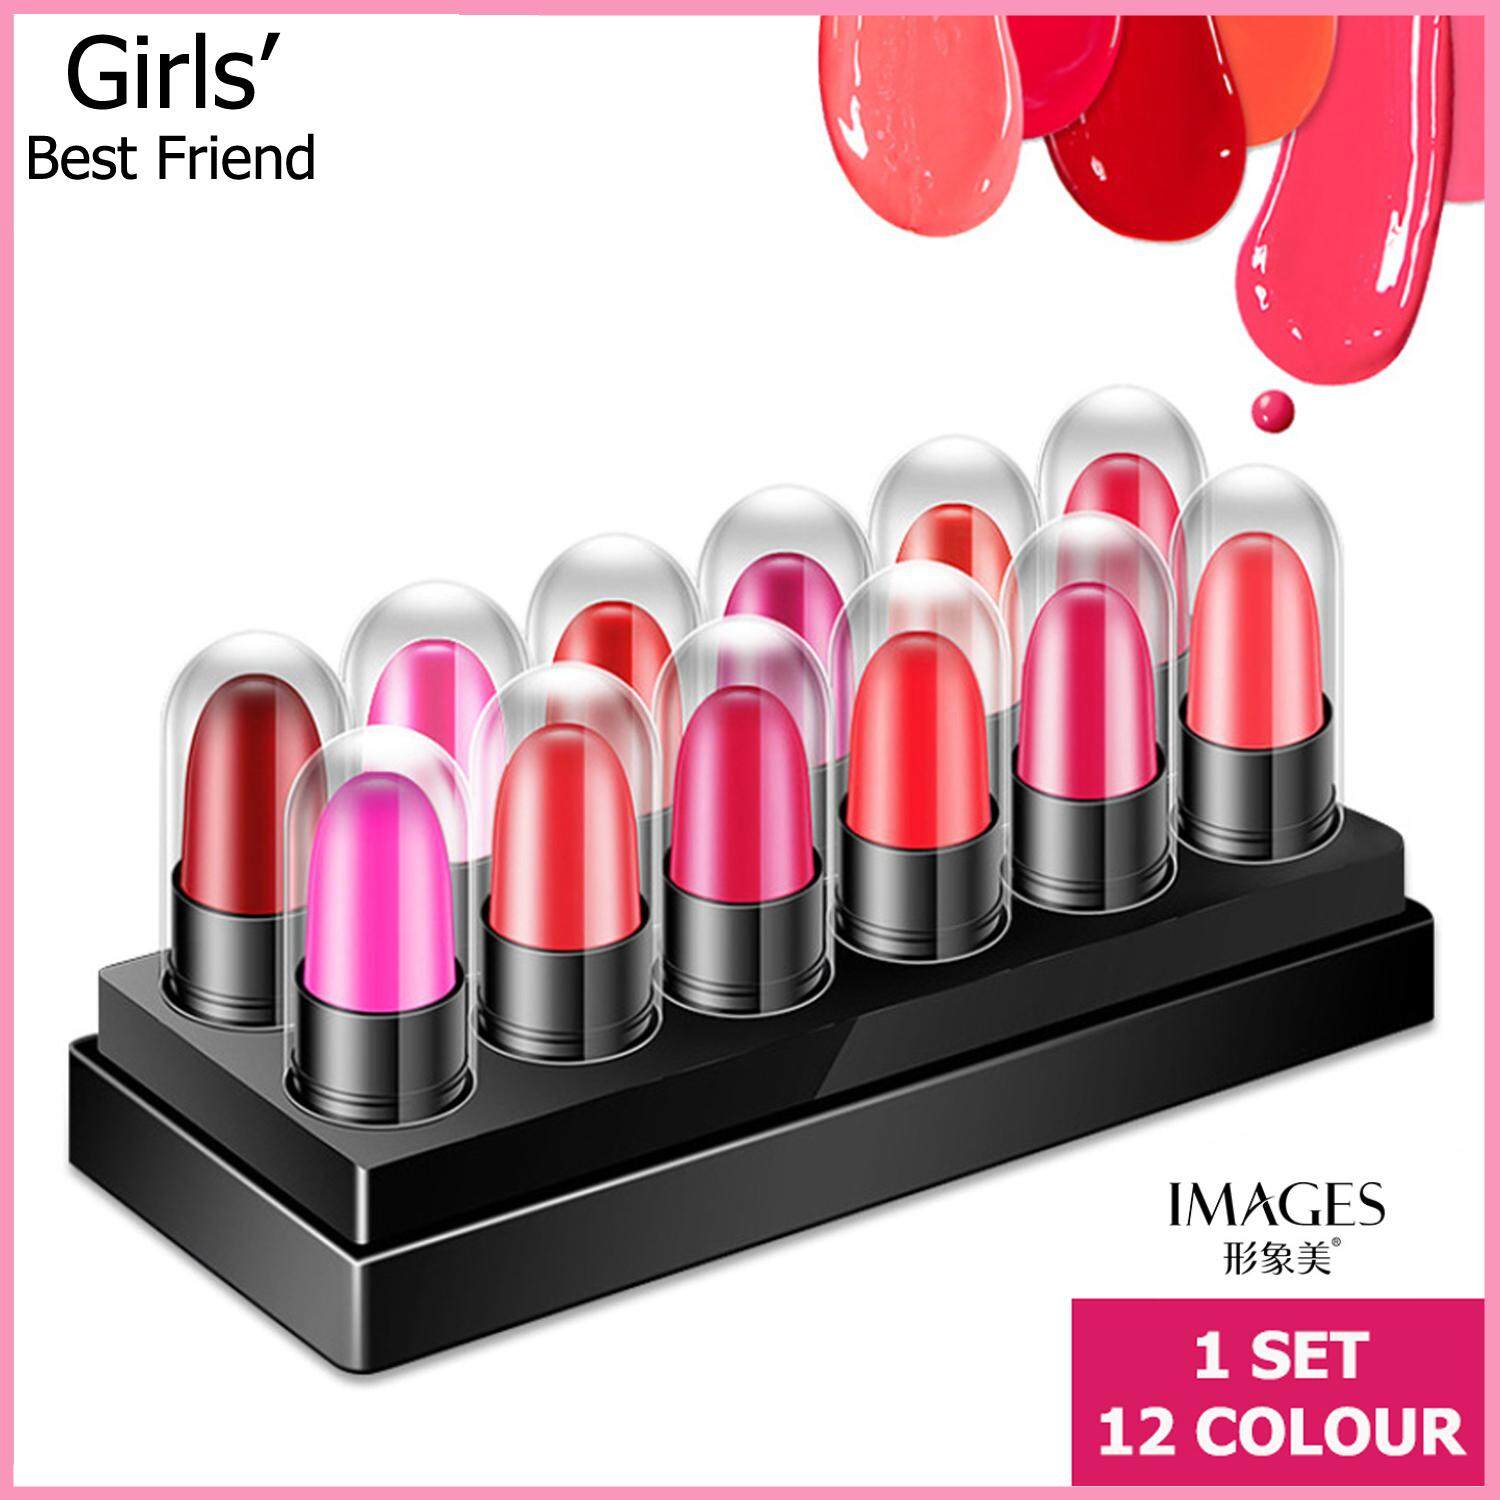 Images เซ็ทมินิสลิปสติก 12 แท่ง 12 สี, ลิปสติกเซ็ท, Mini Lipstick 1 Set 12 pcs 12 Colour